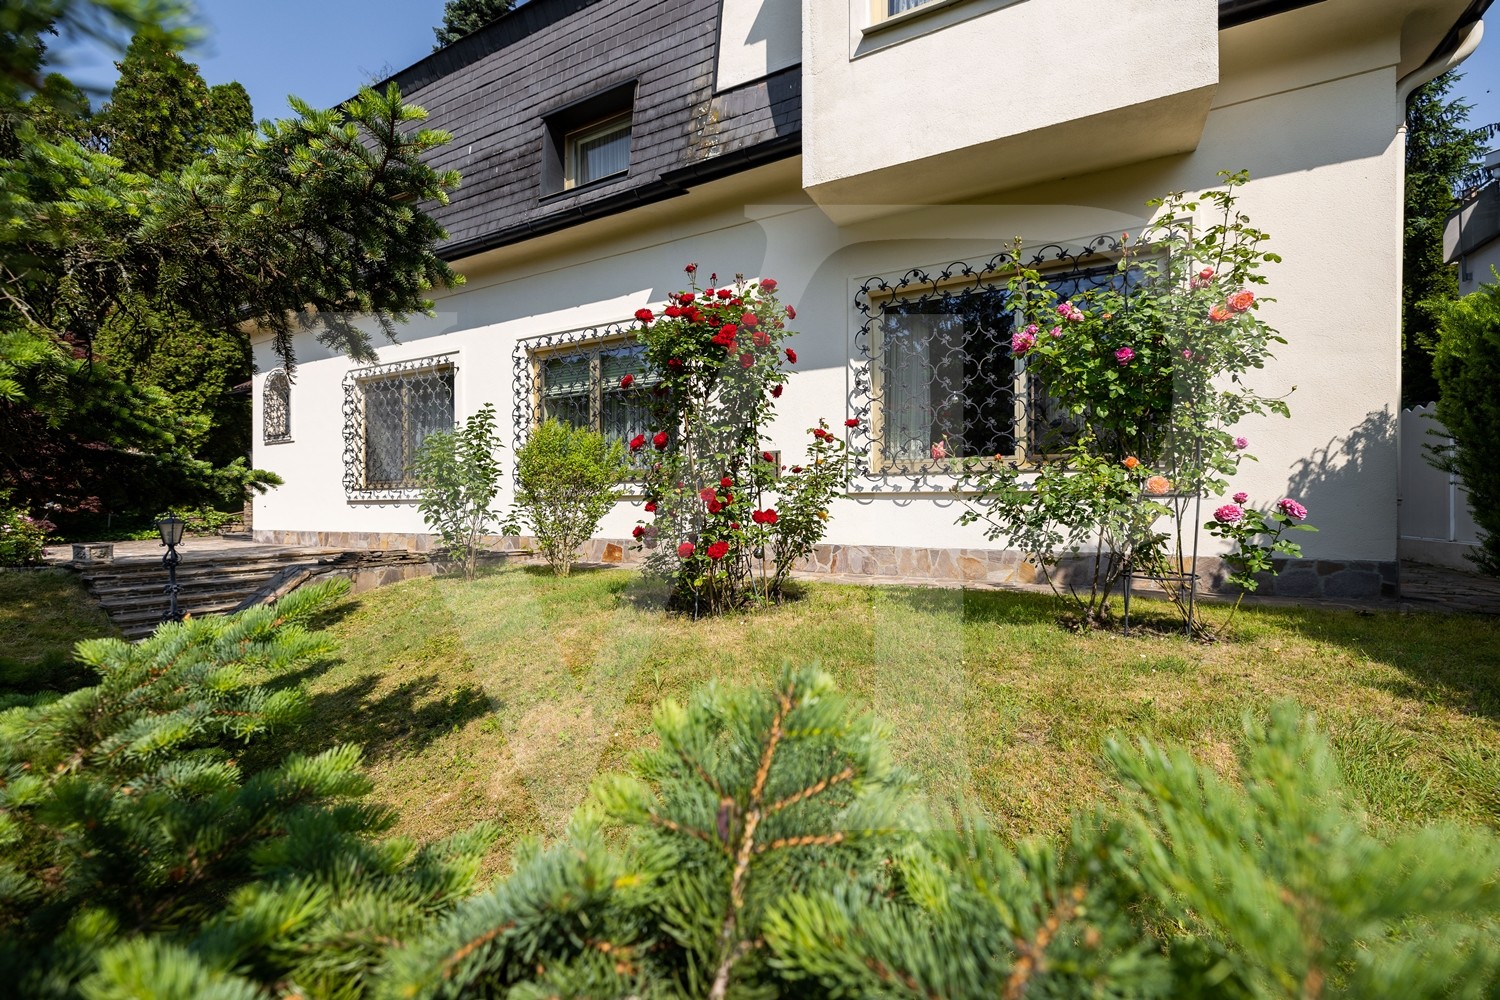 Wunderschönes Grundstück mit Villa in Grünlage von Dornbach